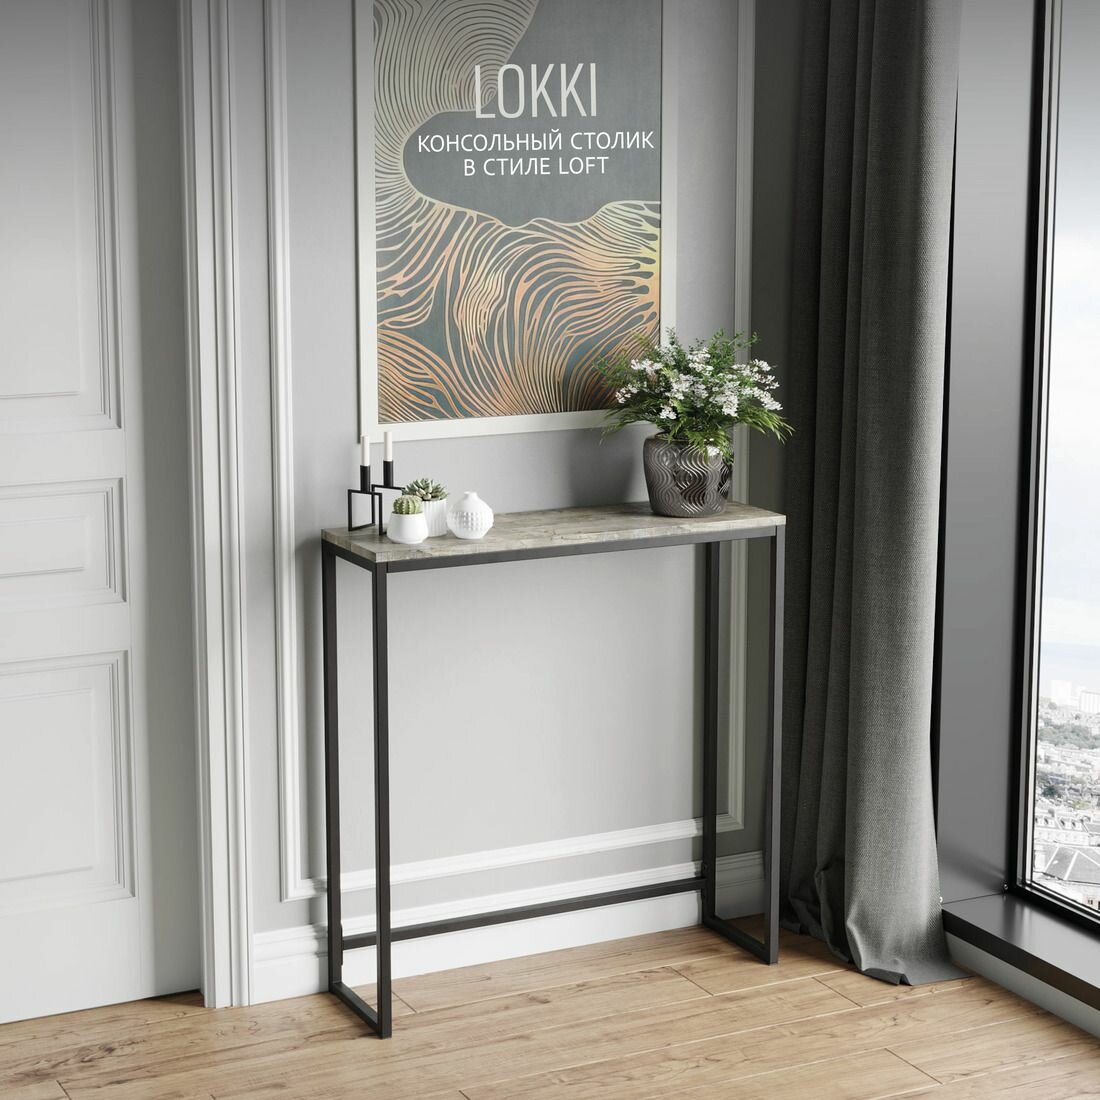 Консольный столик LOKKI loft, серый, приставной, туалетный столик металлический, 85x80x25 см, гростат